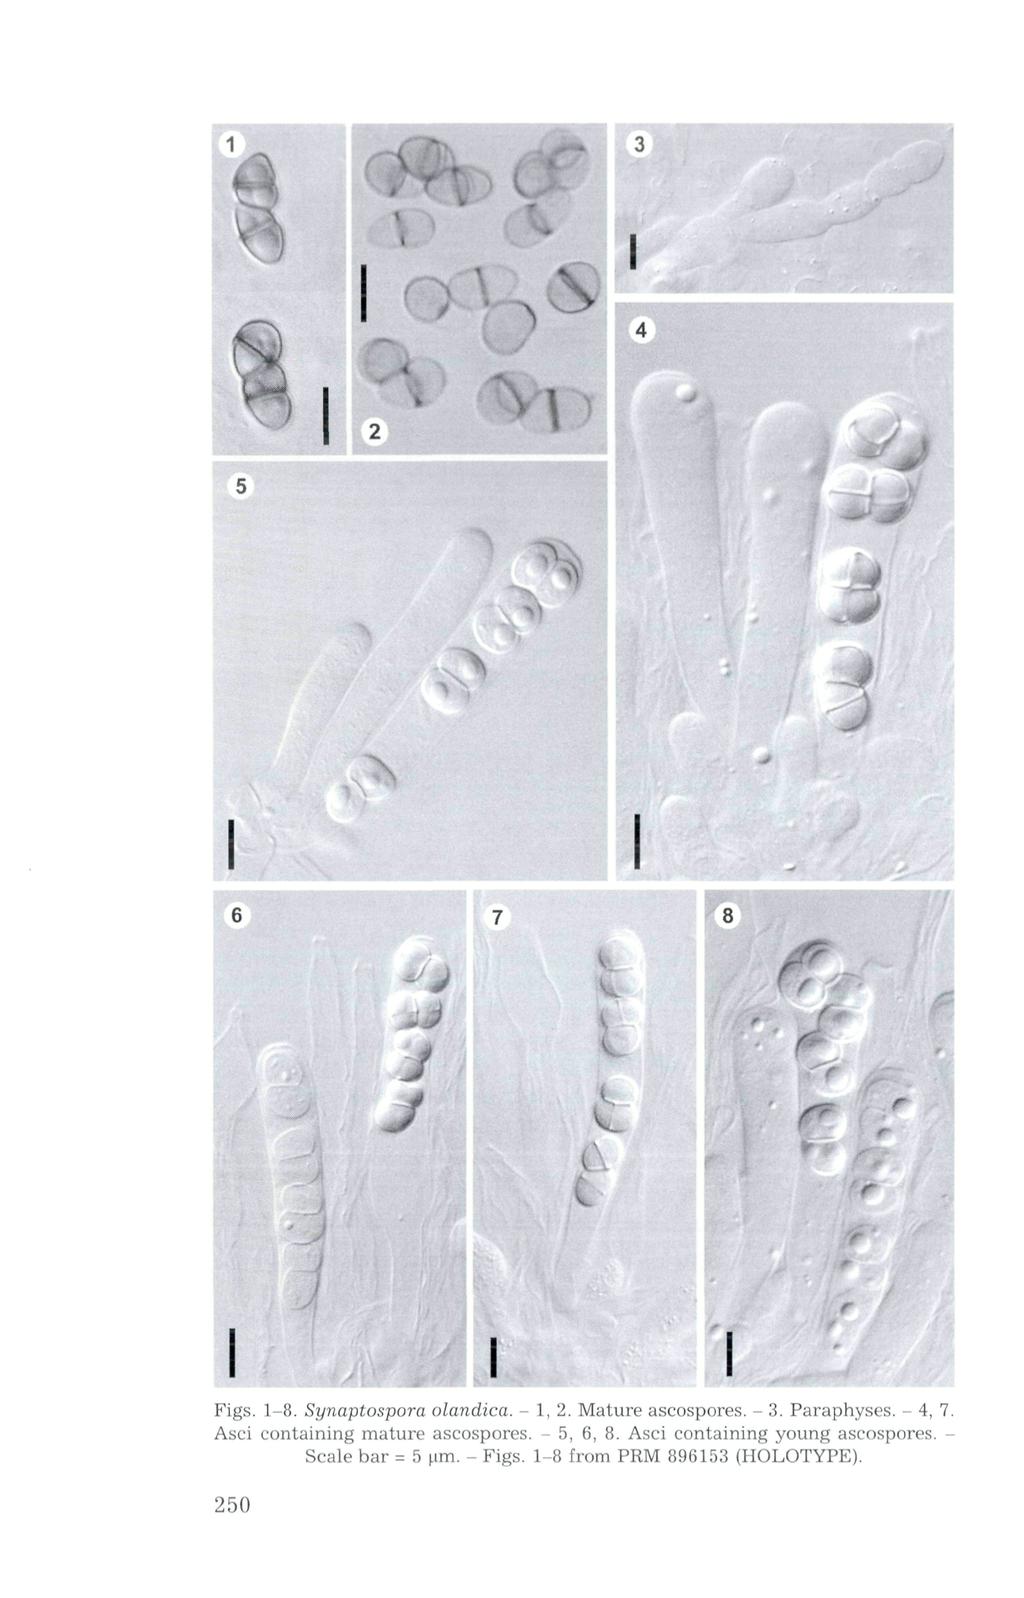 A. Figs. 1-8. Synaptospora olandica. - 1, 2. Mature ascospores. - 3. Paraphyses. - 4, 7.